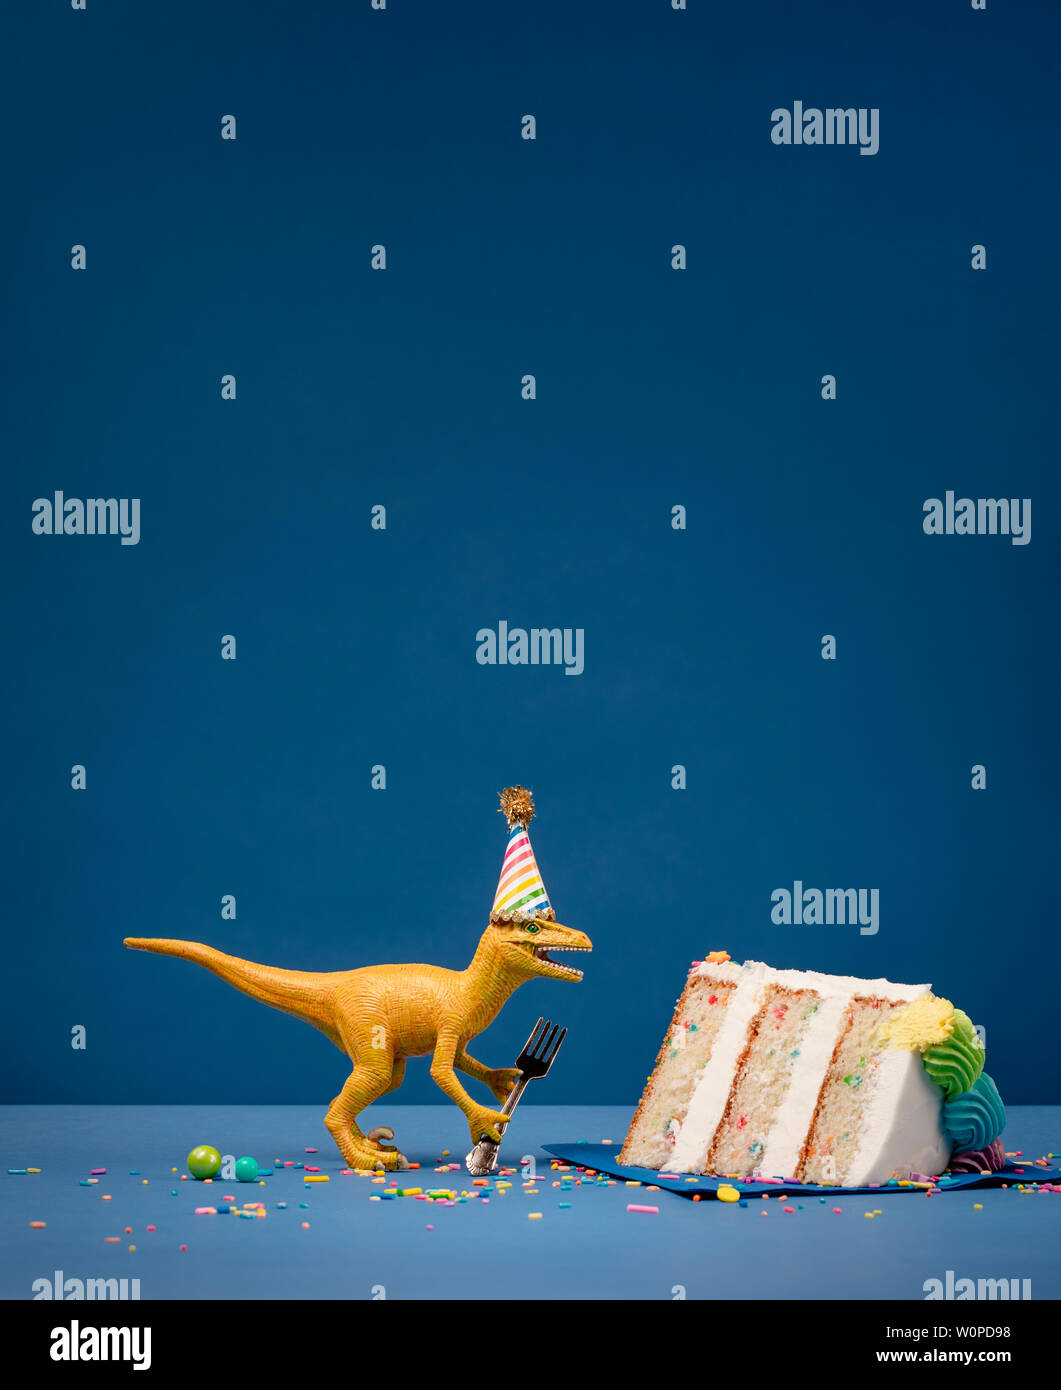 Spielzeug Dinosaurier Holding eine Gabel neben einem Stück Torte auf einem blauen Hintergrund mit Copyspace. Stockfoto